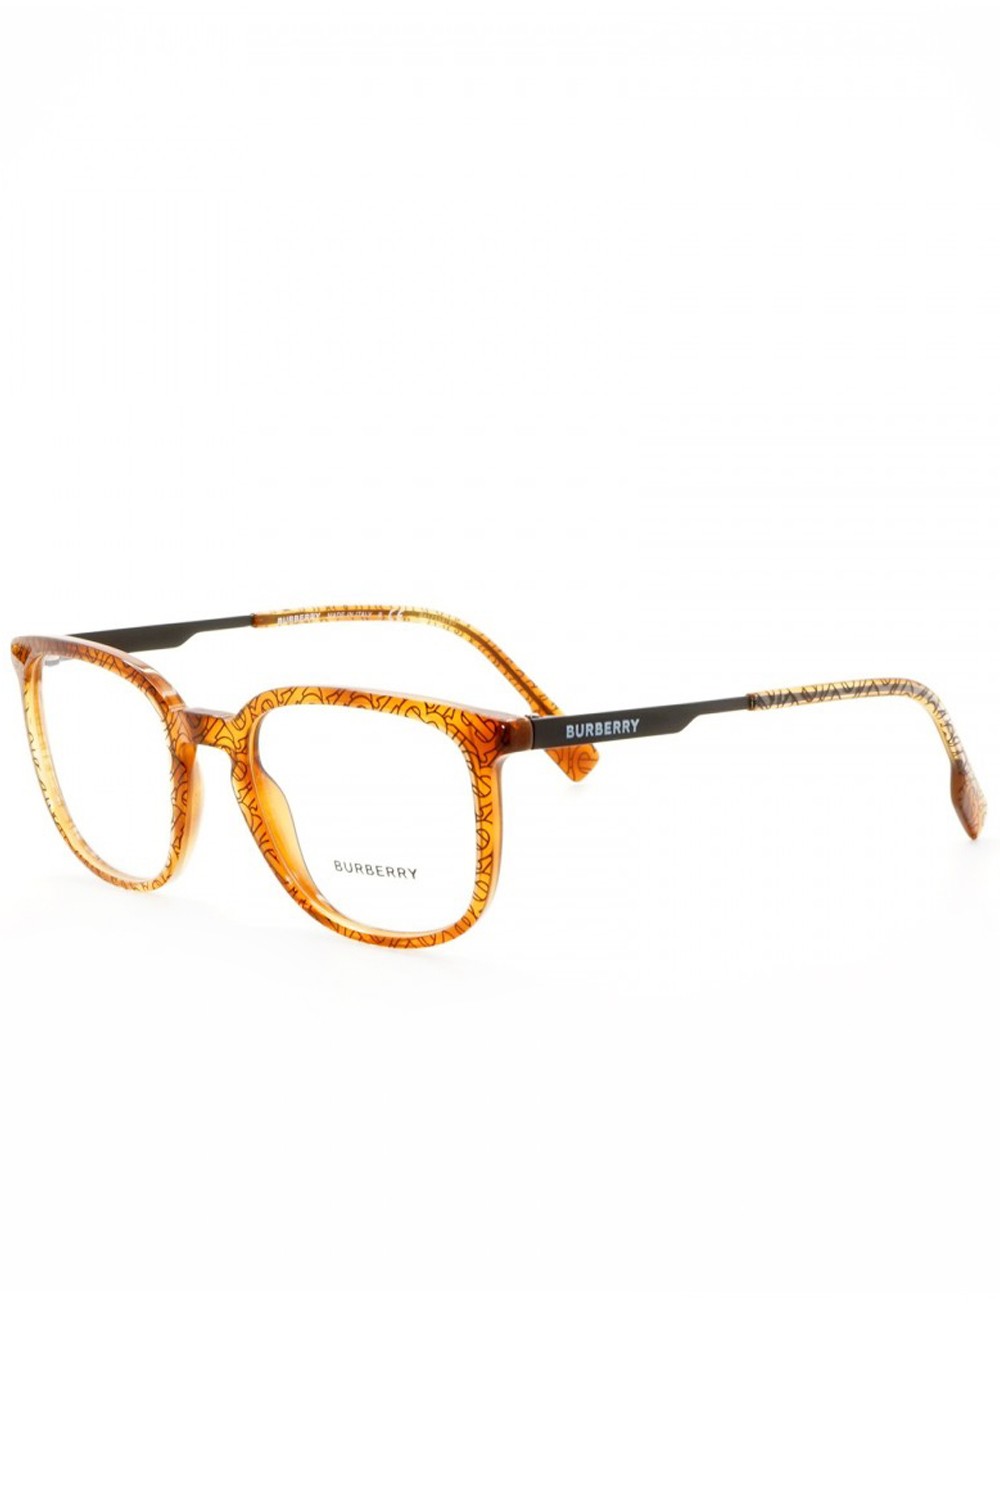 Burberry - Occhiali da vista in celluloide squadrati unisex arancione - 2307